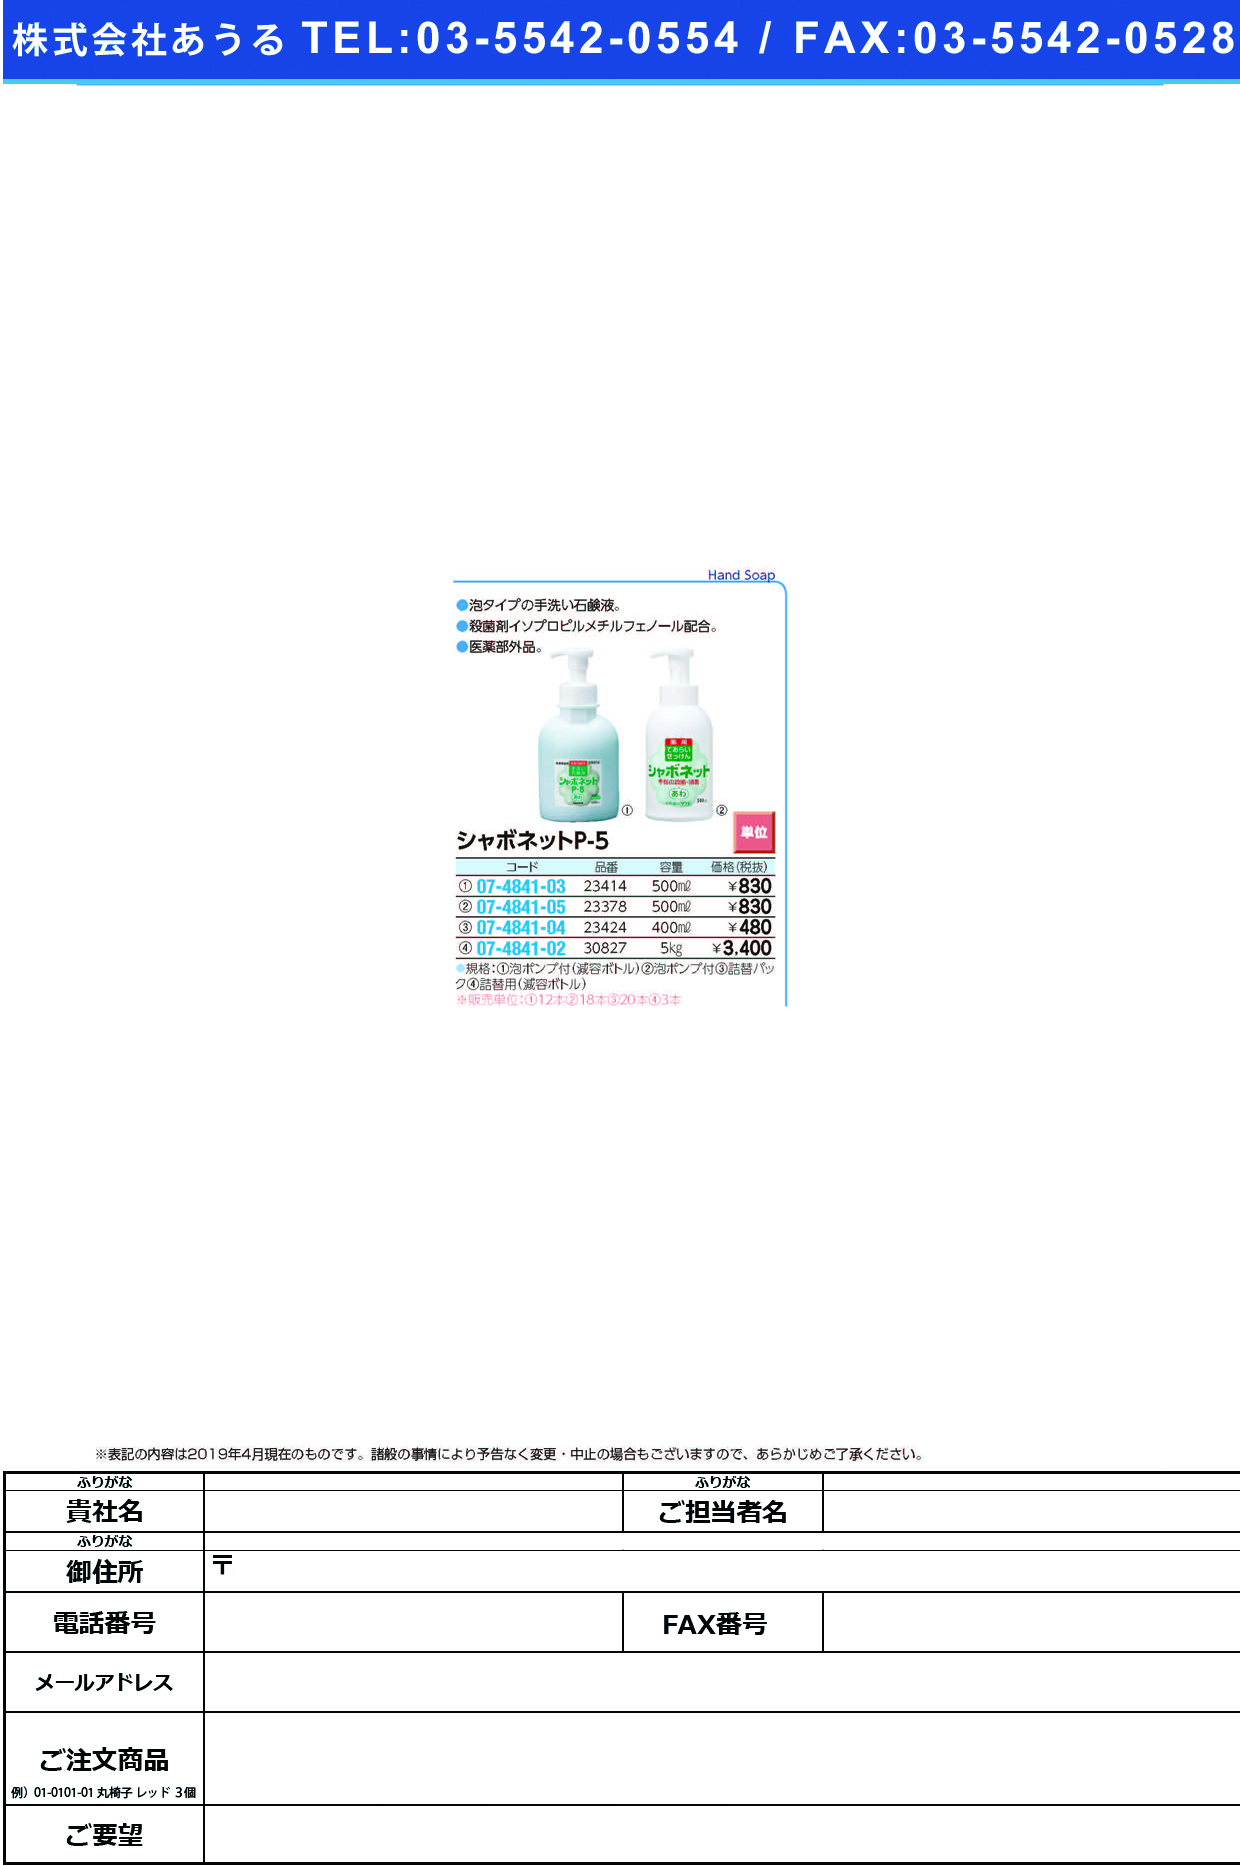 (07-4841-05)シャボネットＰ－５（泡）ハードボトル 23378(500ML･ﾎﾟﾝﾌﾟﾂｷ) ｼｬﾎﾞﾈｯﾄP-5(ｱﾜﾀｲﾌﾟ)(東京サラヤ)【18本単位】【2019年カタログ商品】